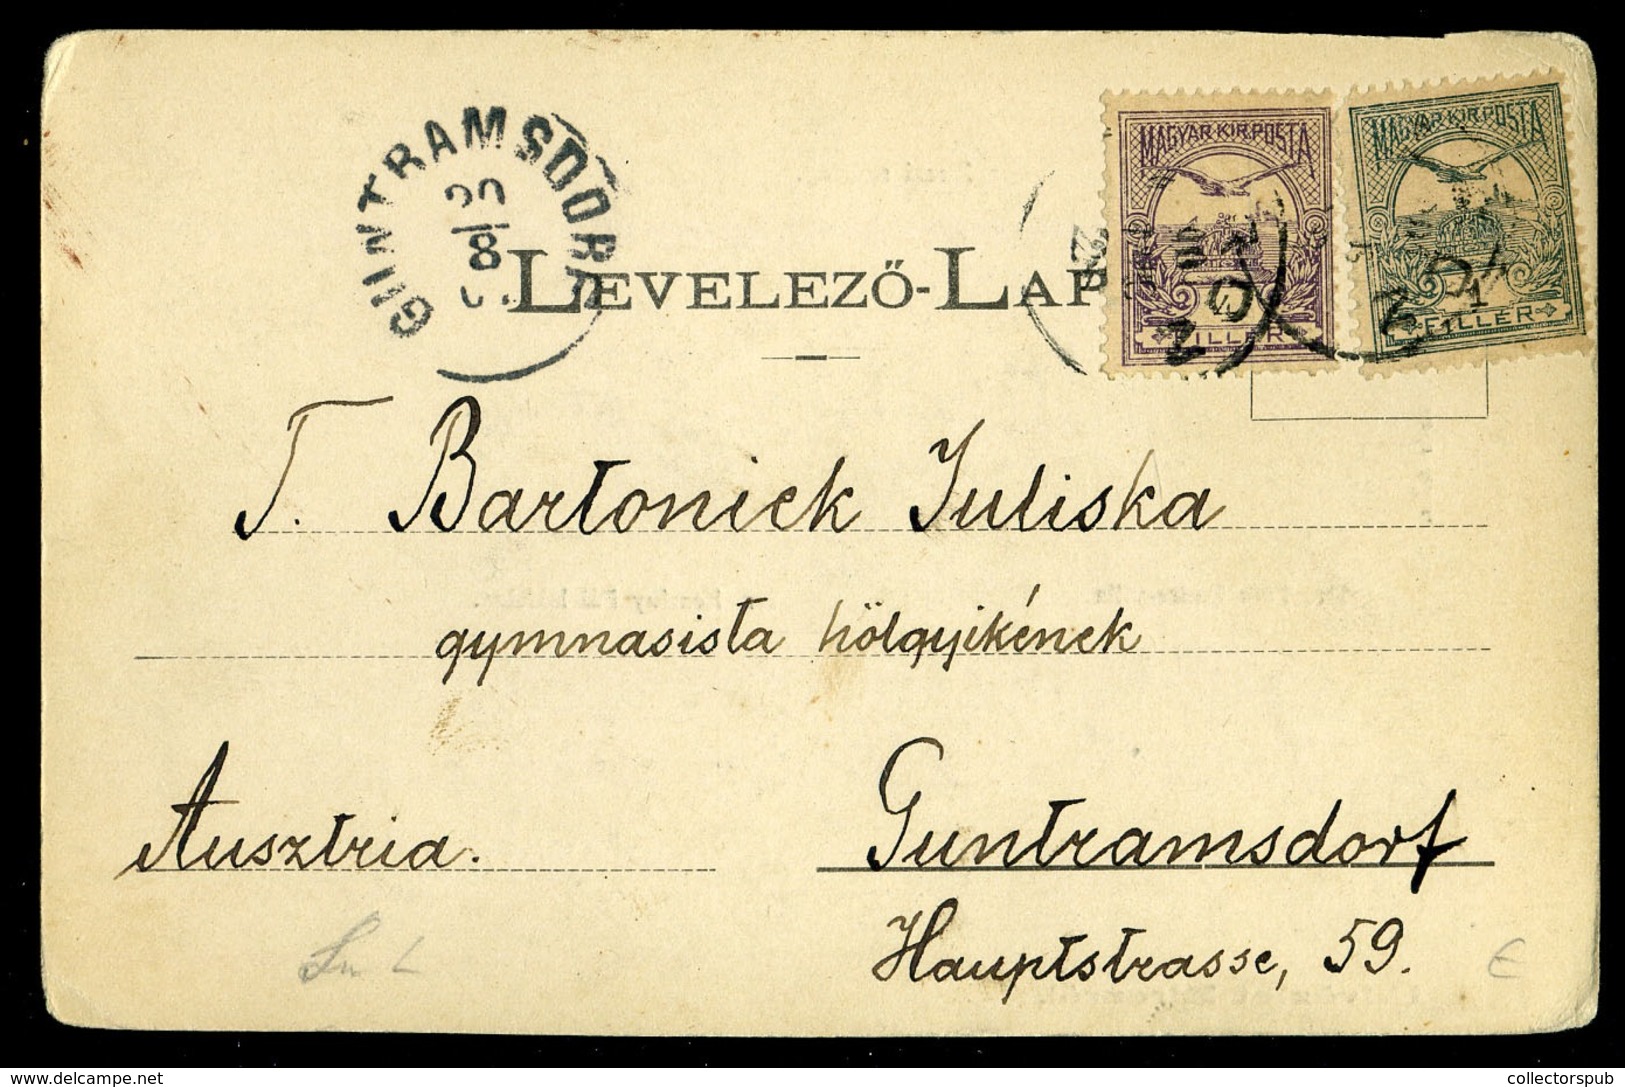 ZIRC 1900. Régi Képeslap - Hongrie